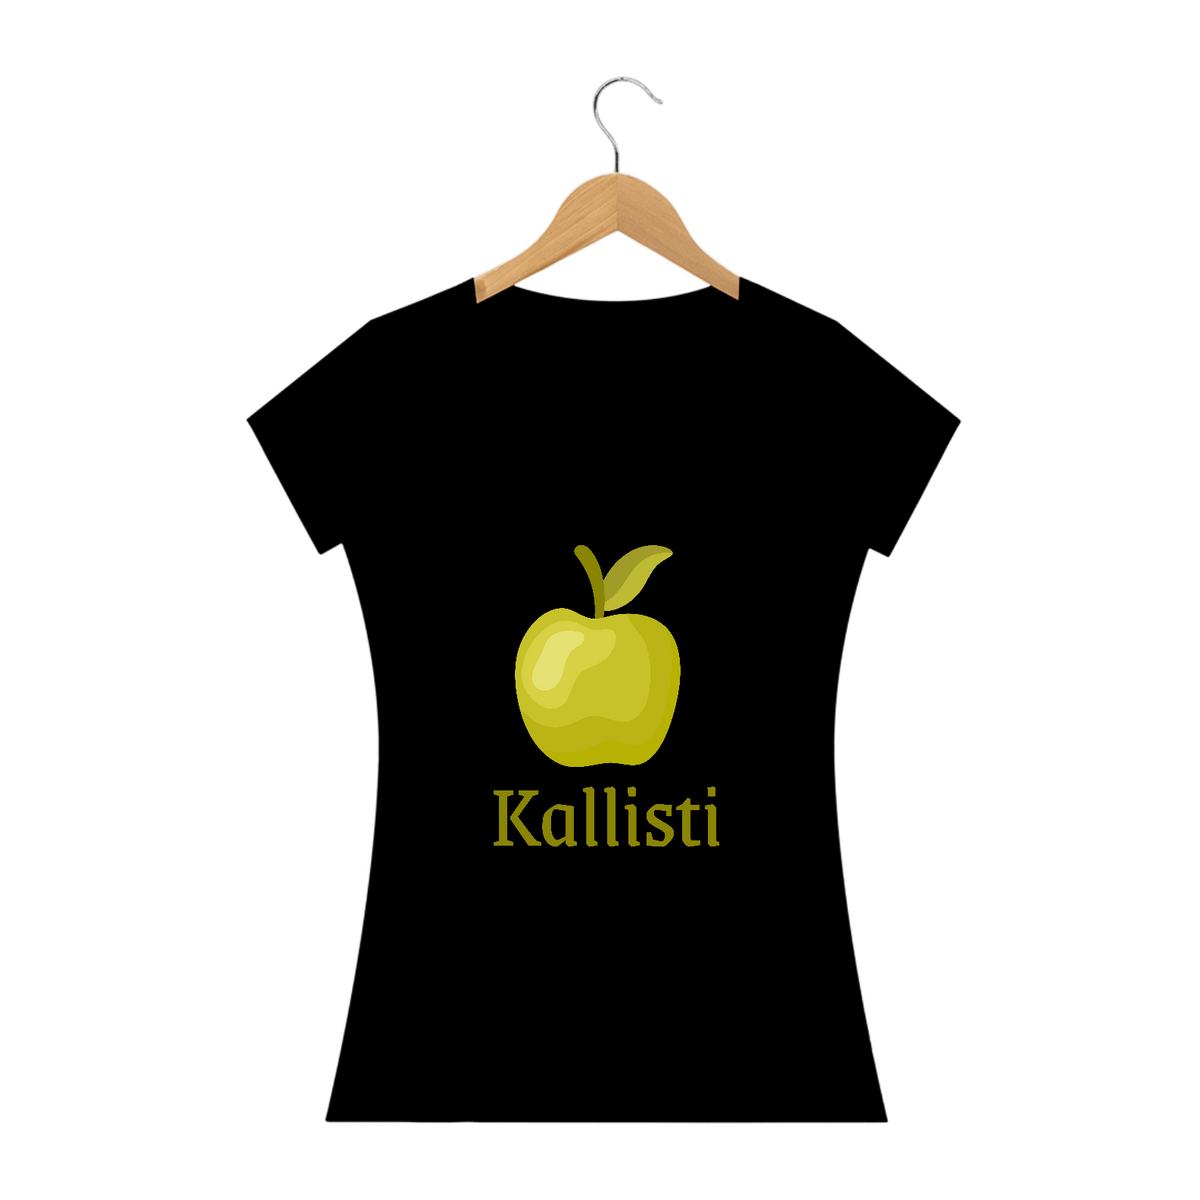 Nome do produto: Babylong Kallisti - Discordianismo